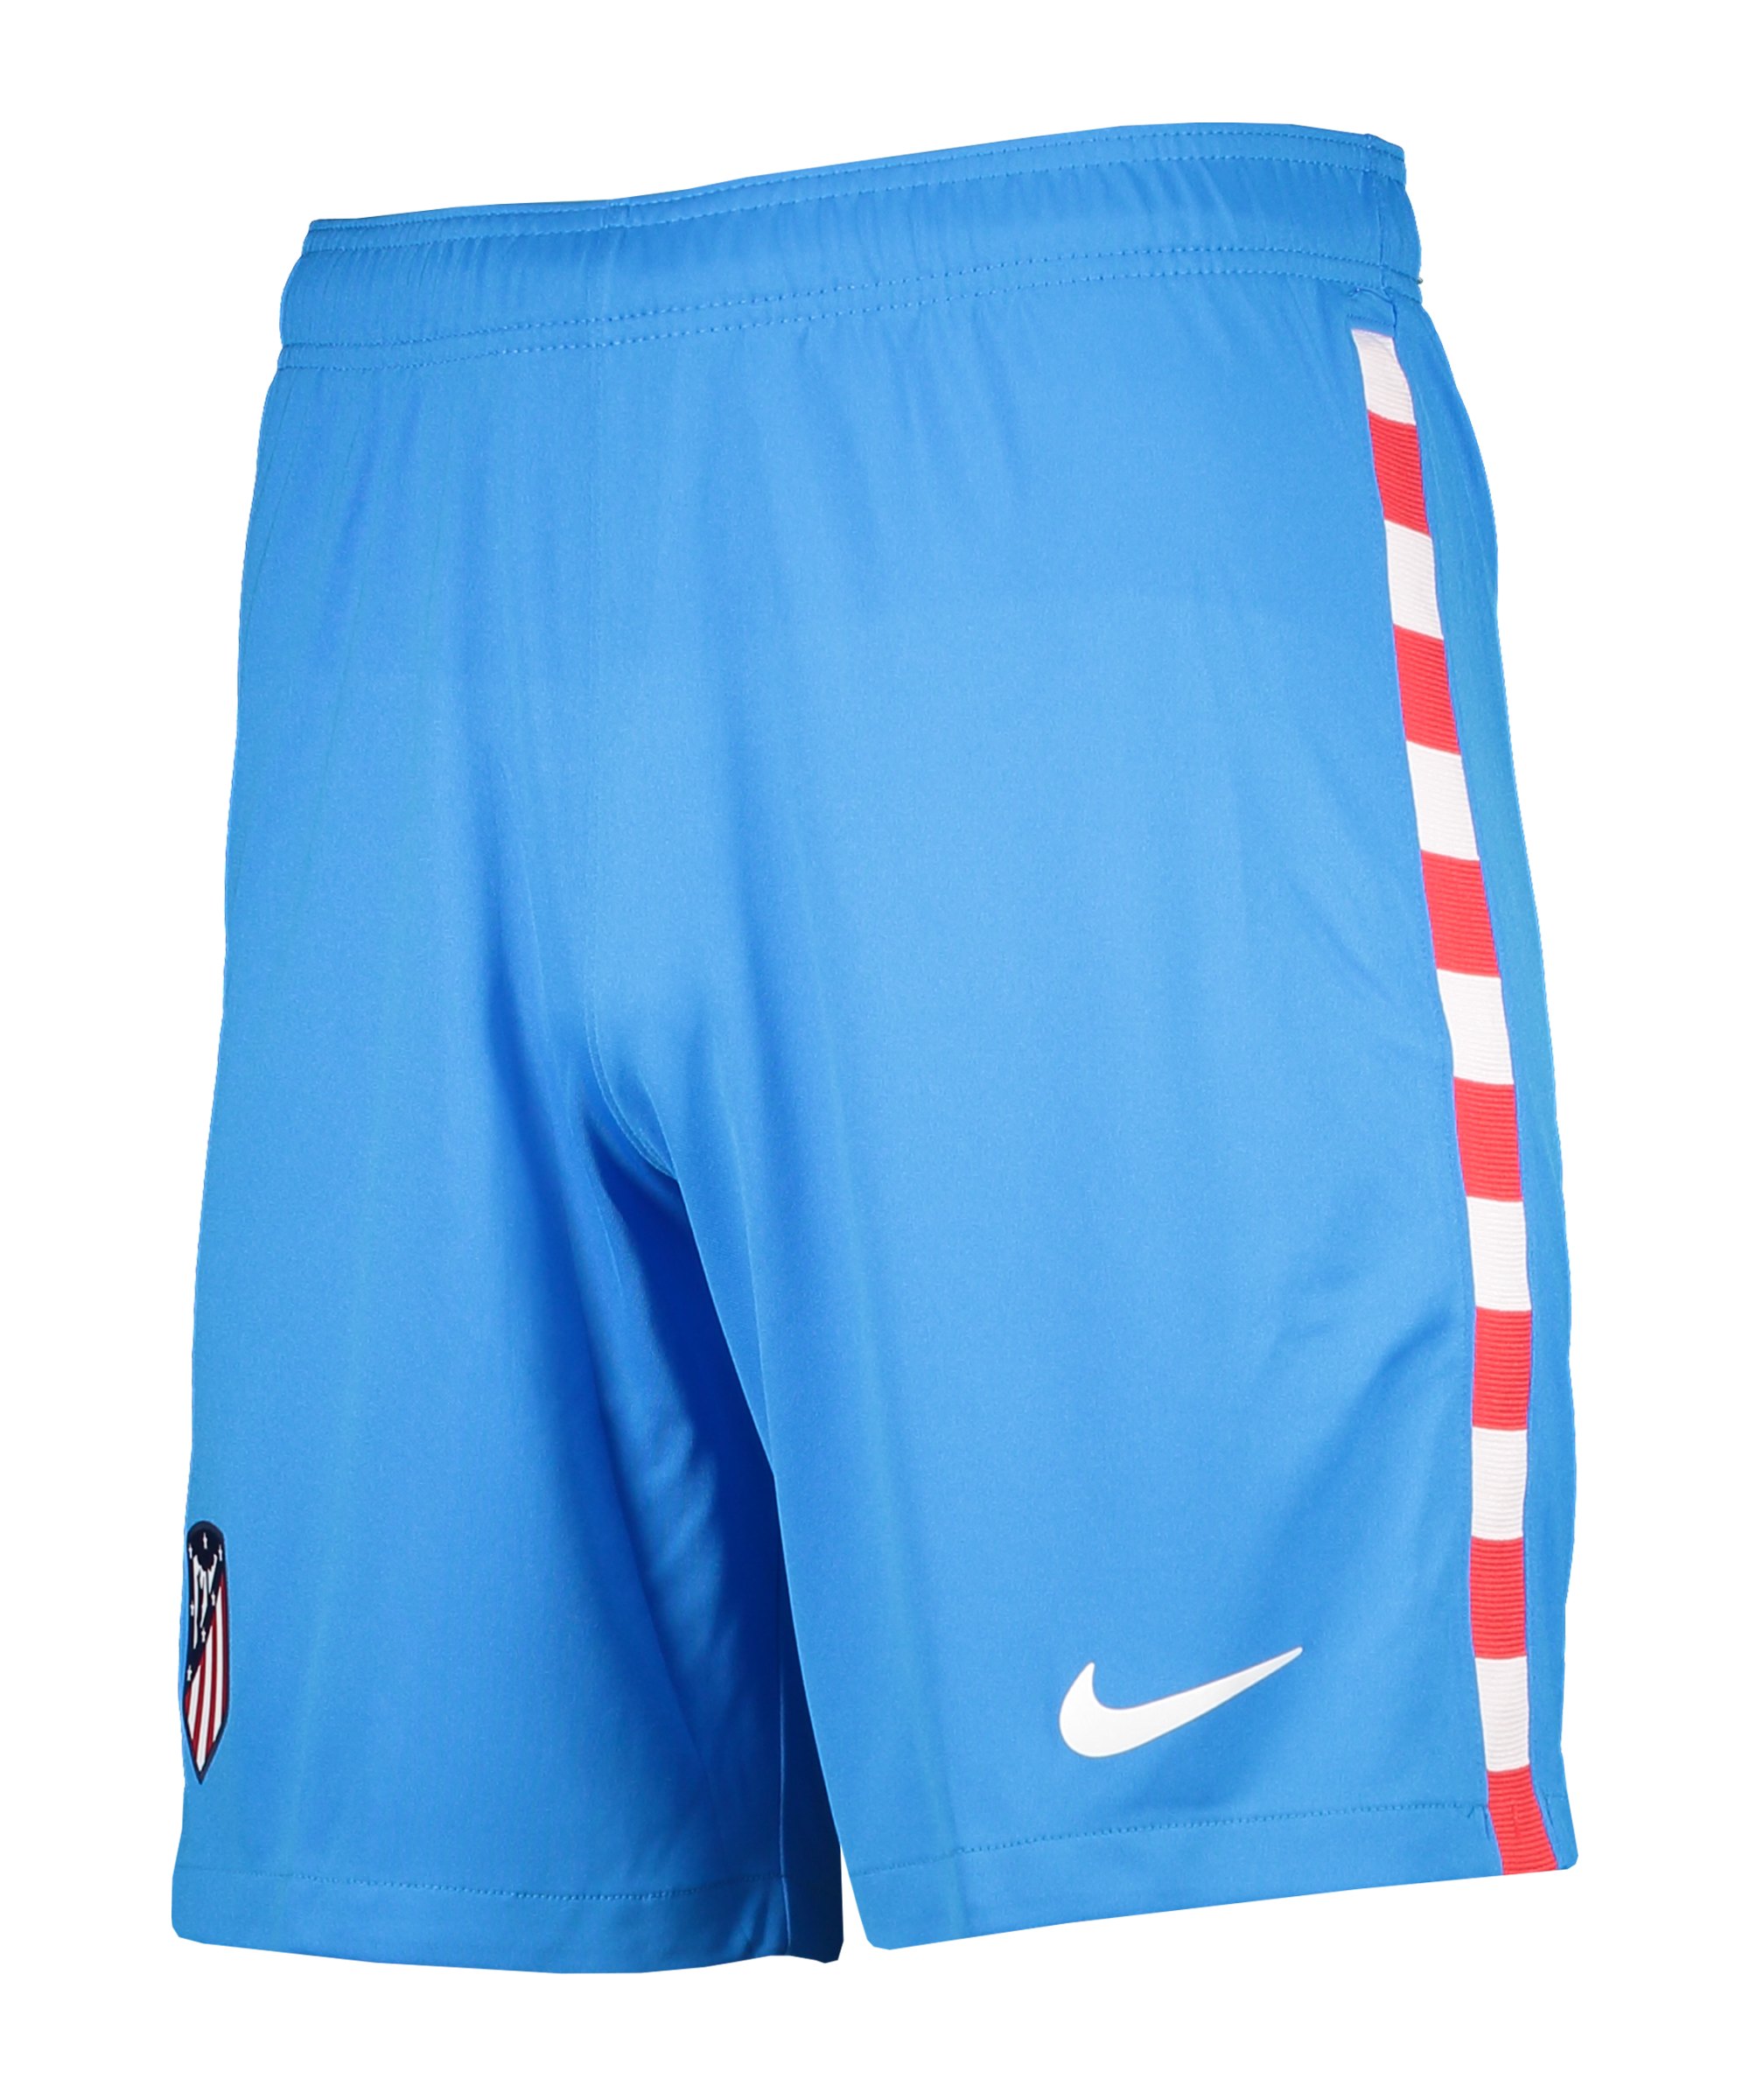 Nike Atletico Madrid Short UCL 2021/2022 Blau F406 - blau